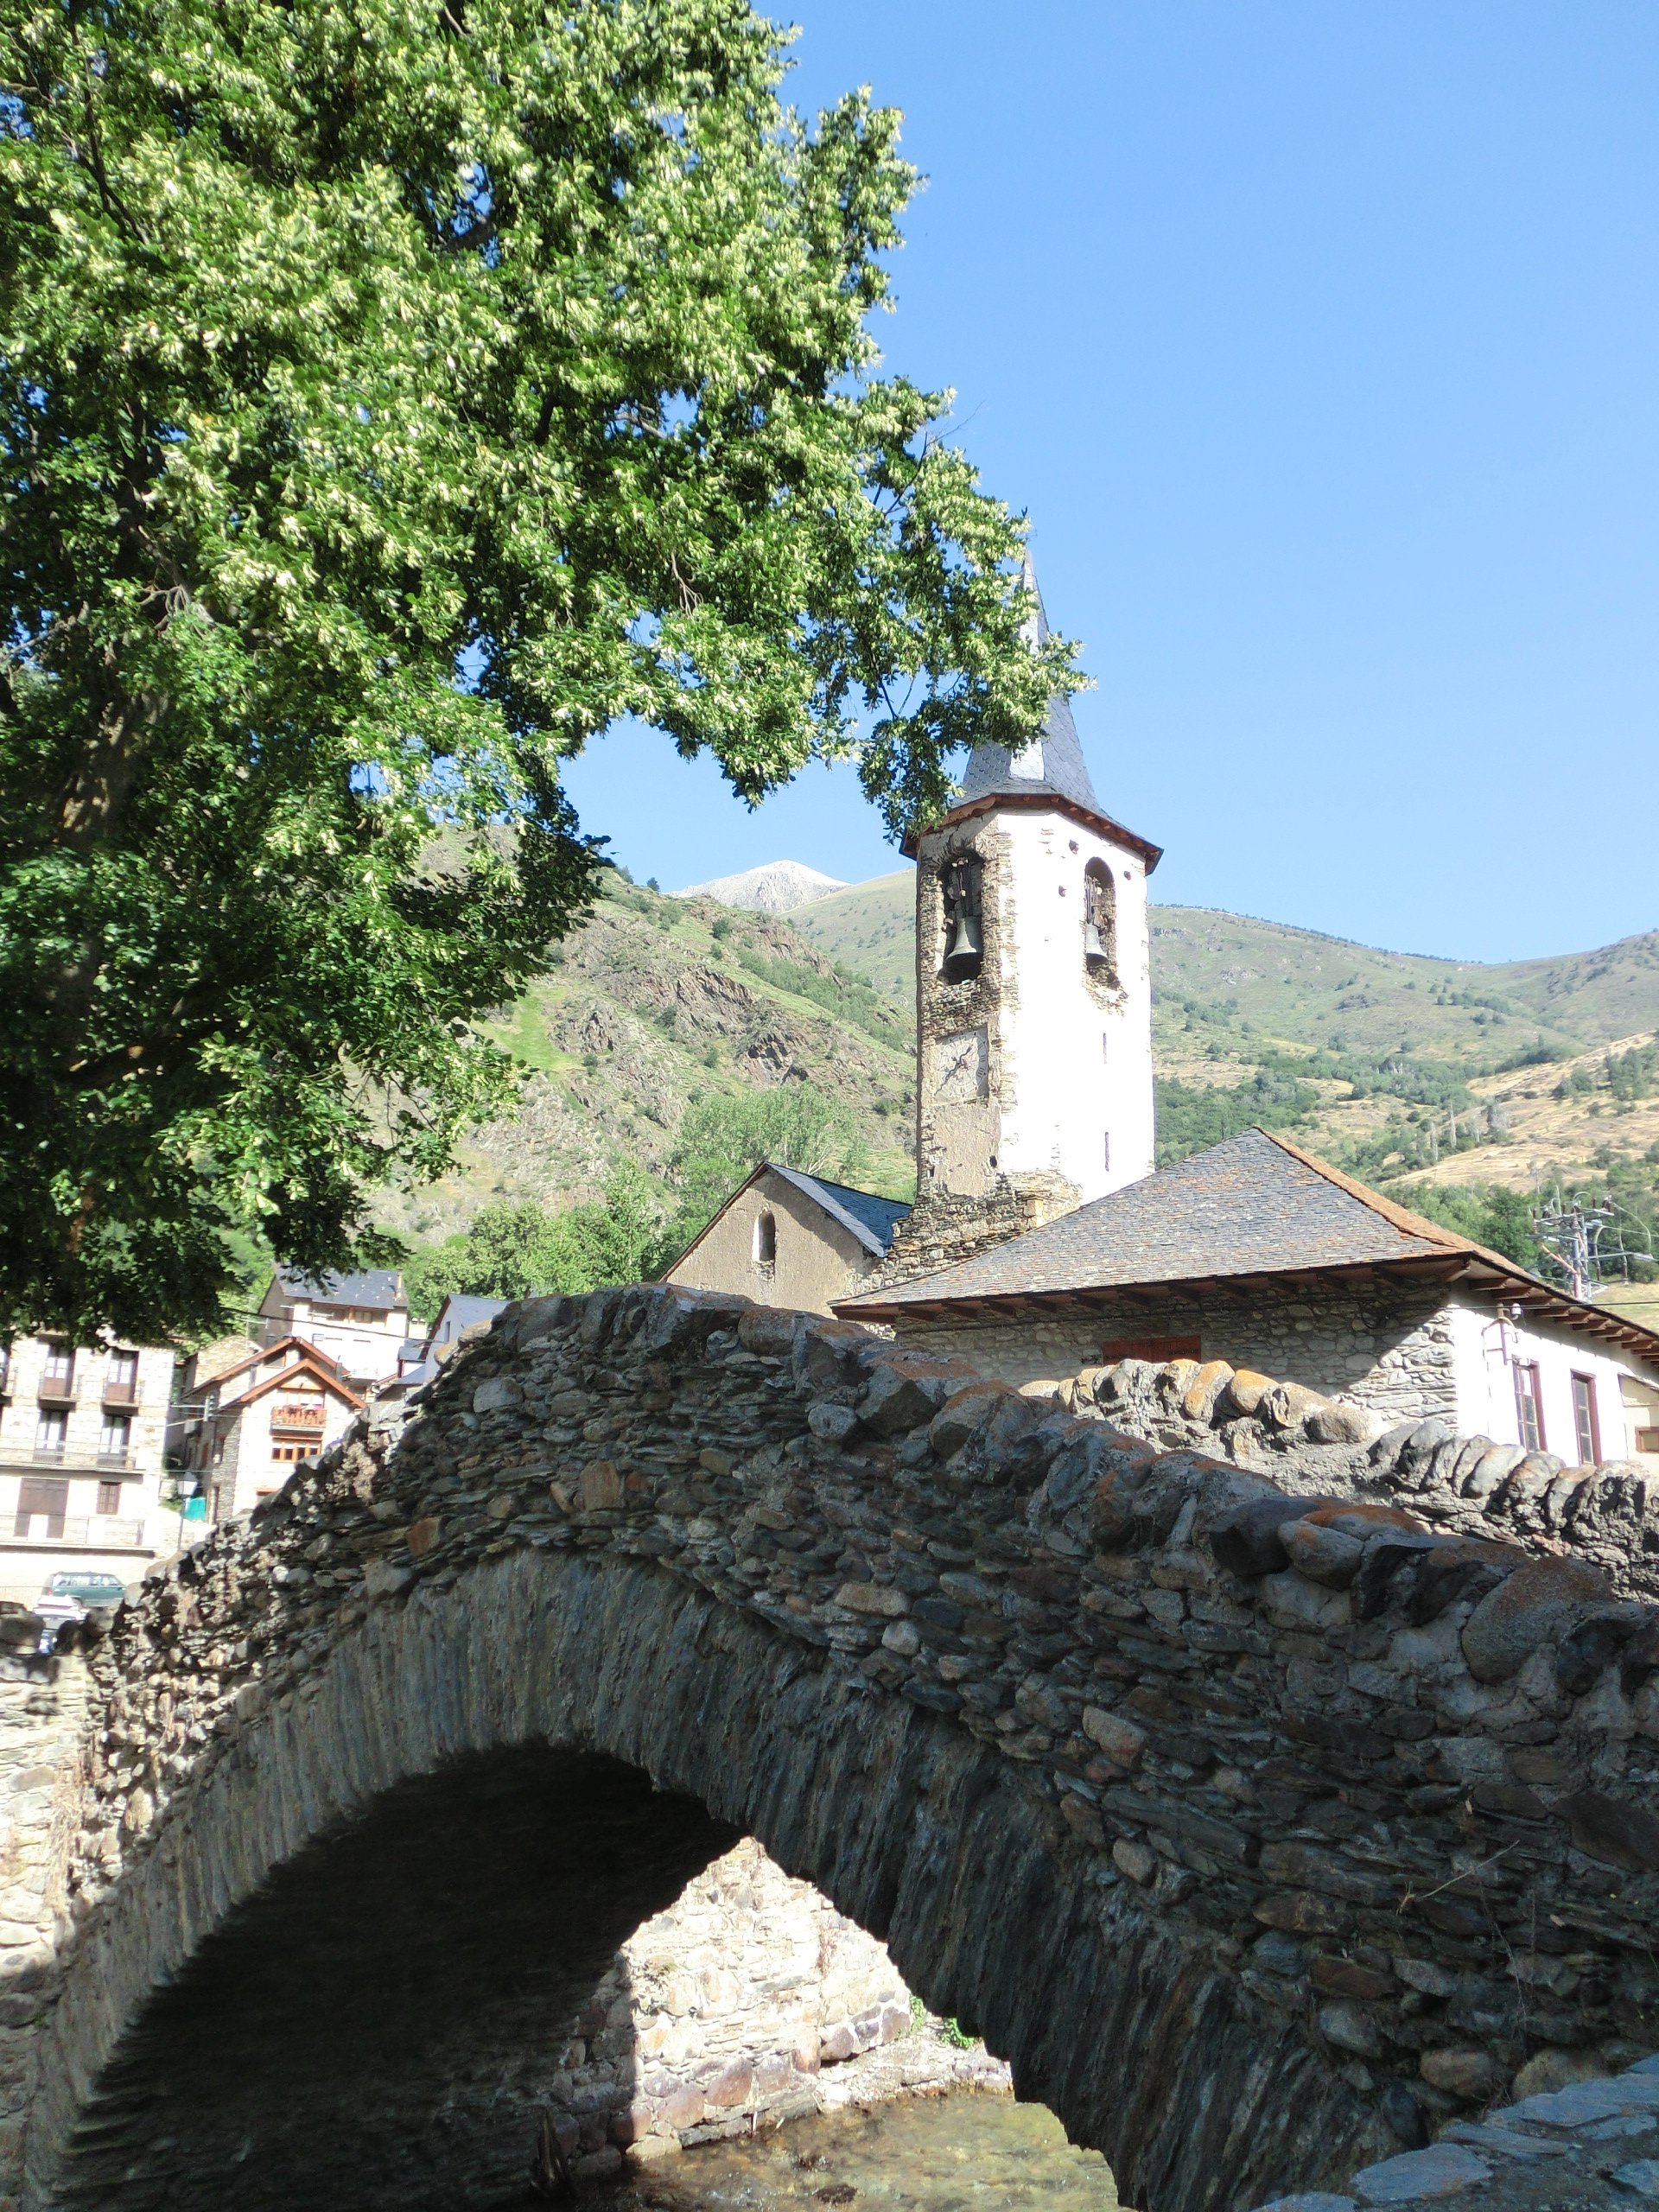 Ferit crític en caure mentre practicava pònting al Pallars Sobirà